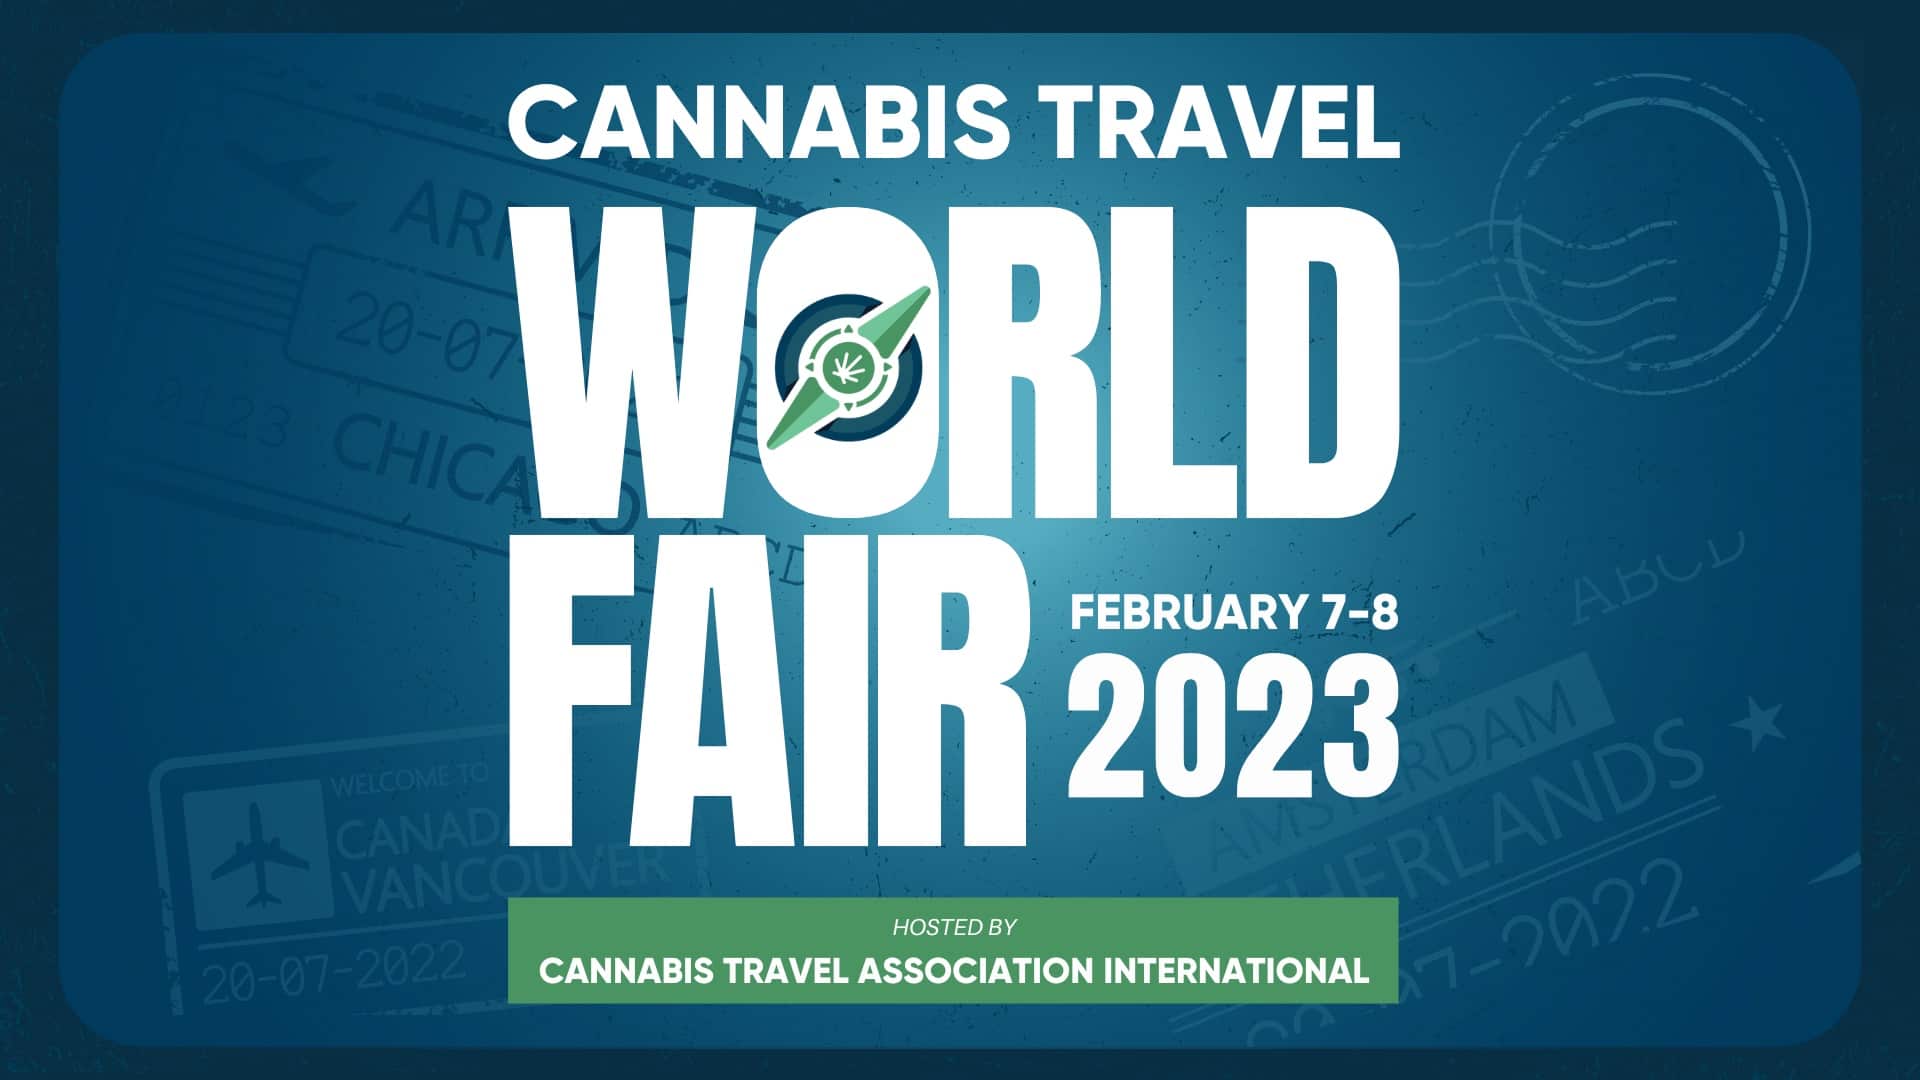 Cannabis Travel World Fair 2023